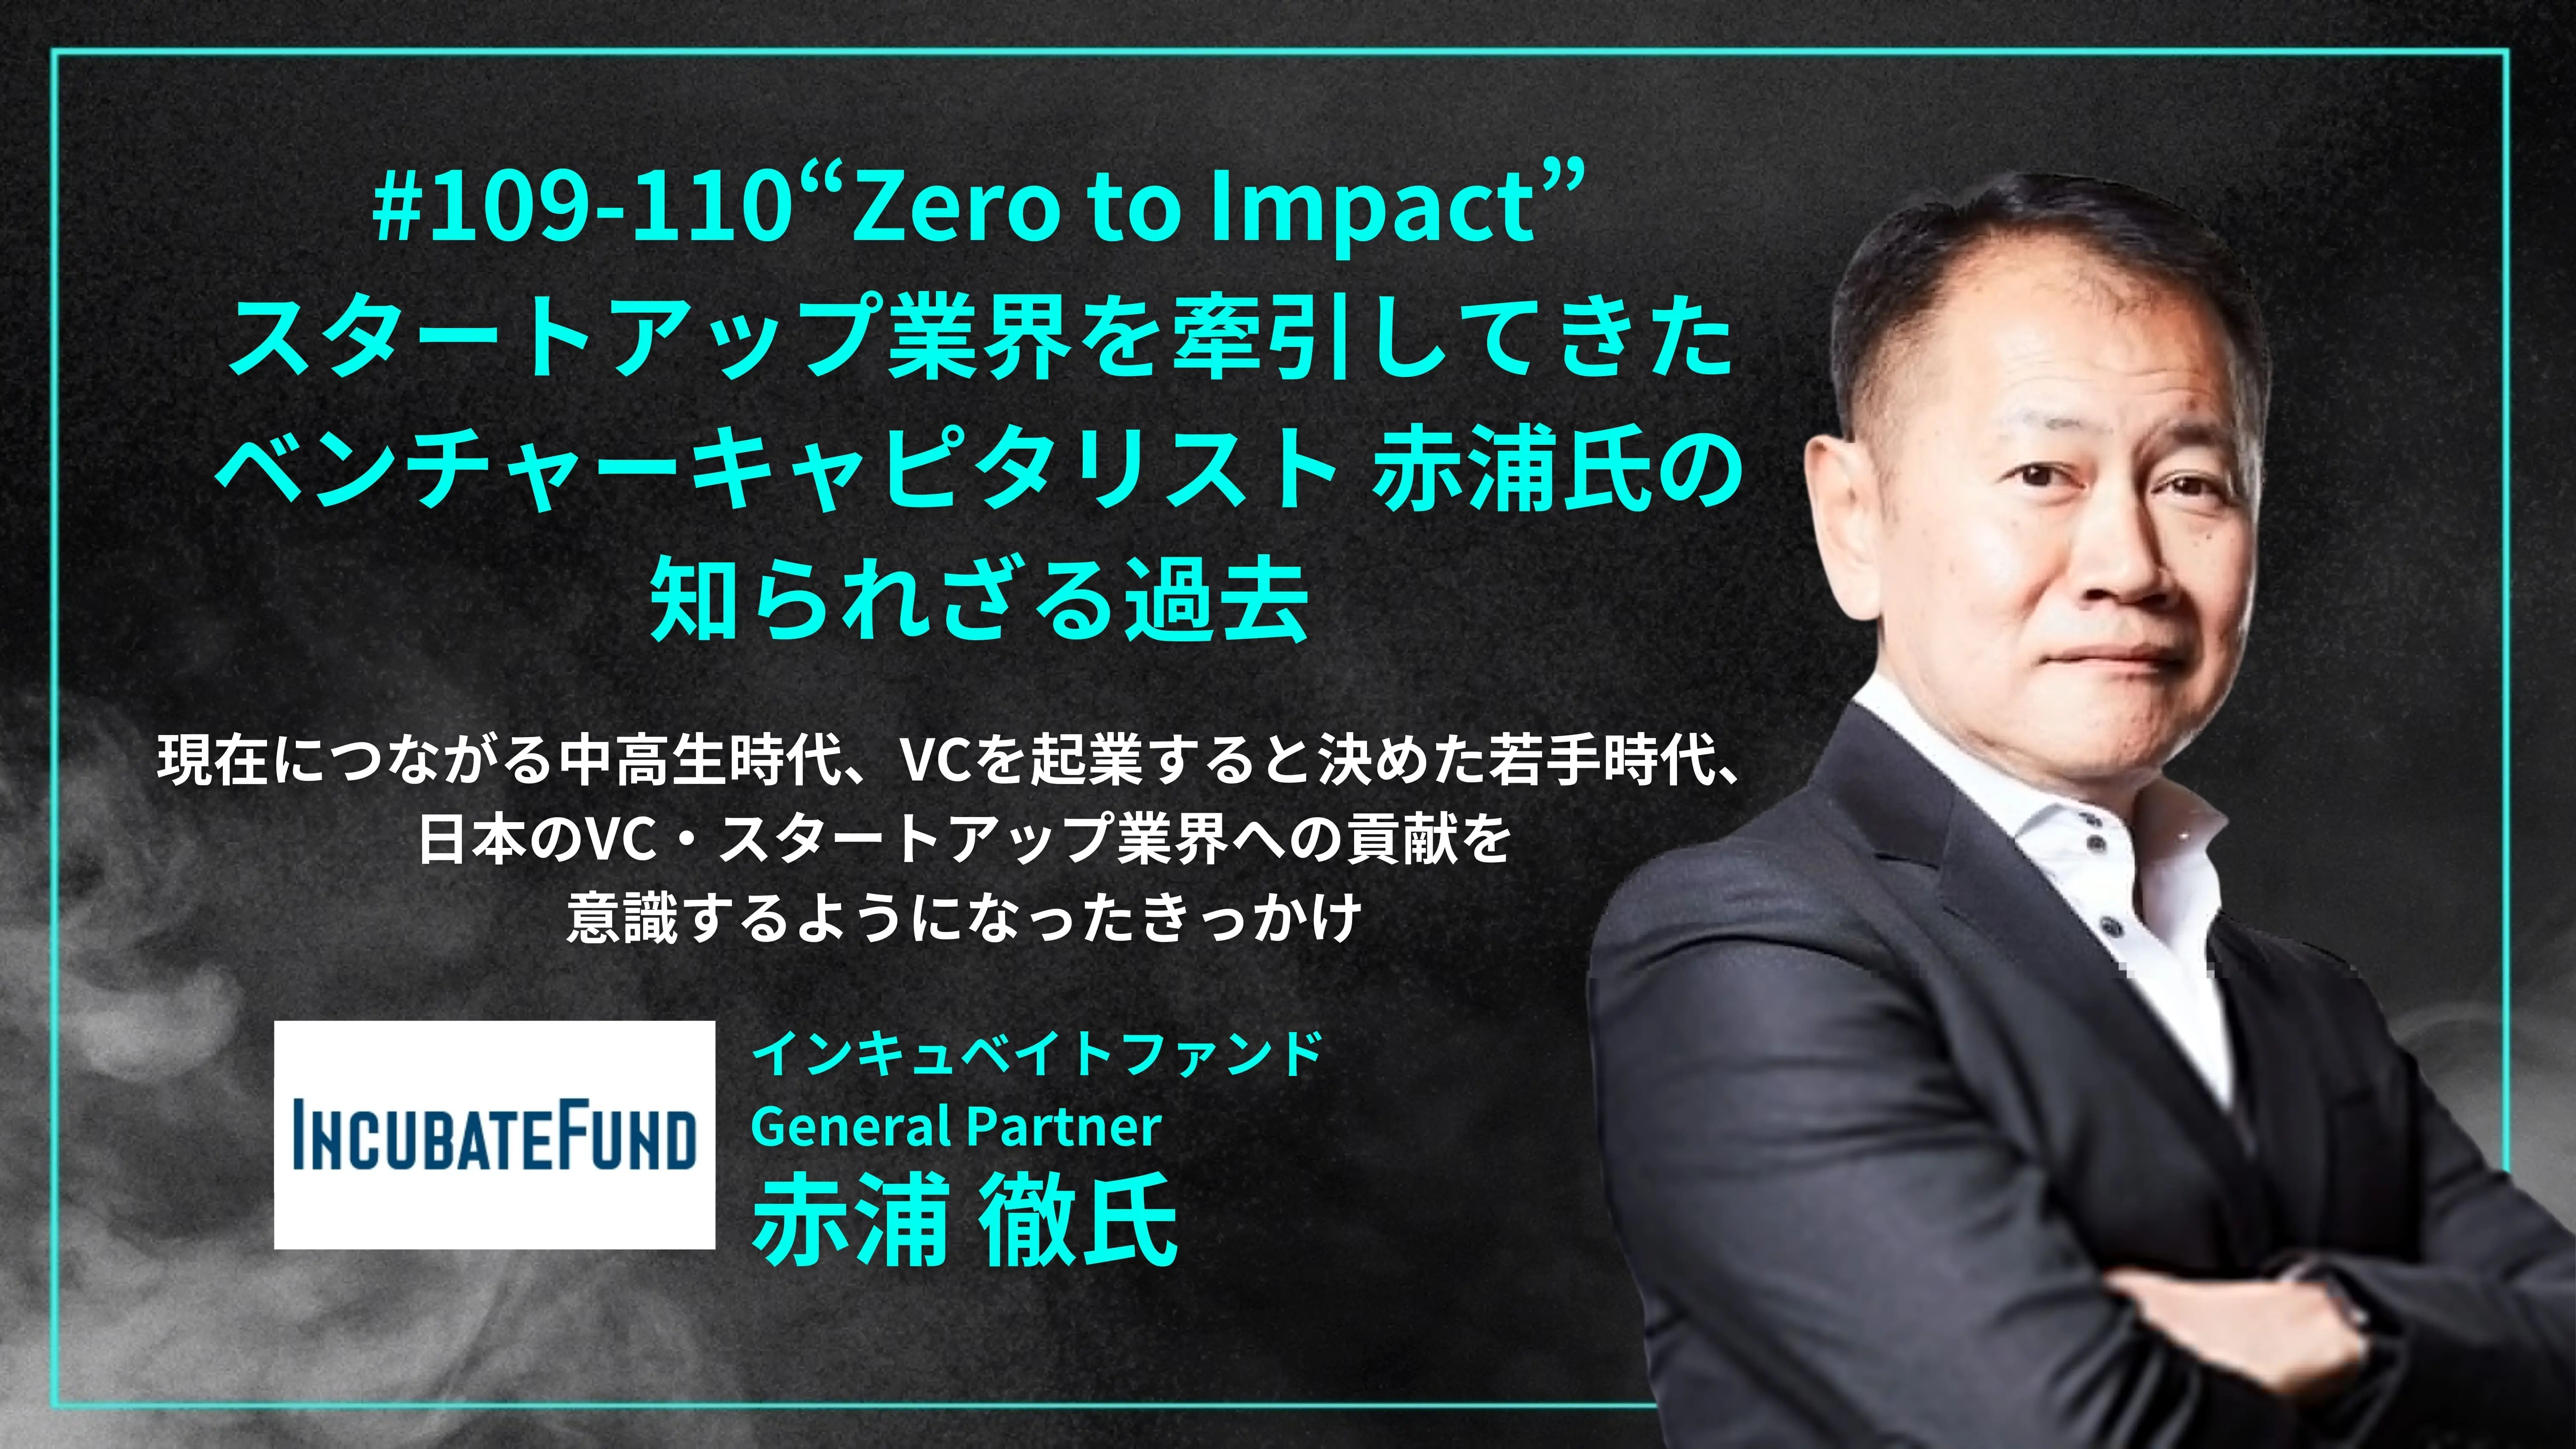 「#109-110「 “Zero to Impact” スタートアップ業界を牽引してきたキャピタリスト赤浦氏の知られざる過去」 現在につながる中高生時代、VCを起業すると決めた若手時代、 日本のVC・スタートアップ業界への貢献を意識するようになったきっかけ - 赤浦 徹氏（インキュベイトファンド General Partner ）」を配信しましたのコピーの画像